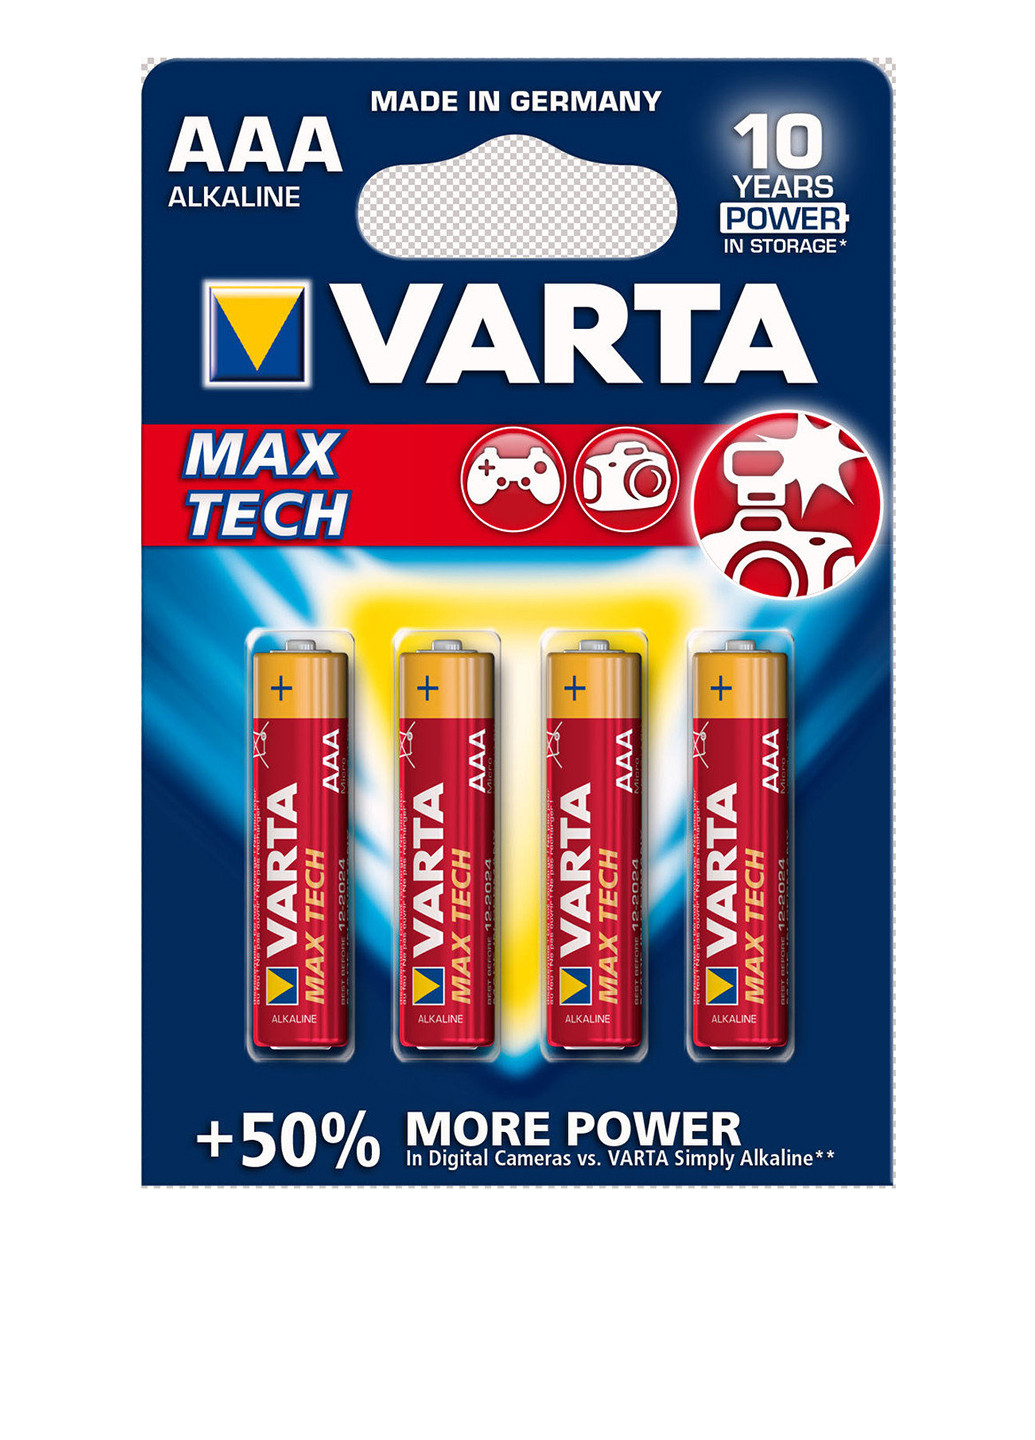 Батарейка LONGLIFE MAX POWER AAA BLI 4 ALKALINE (04703101404) Varta longlife max power aaa bli 4 alkaline (04703101404) (138004311)